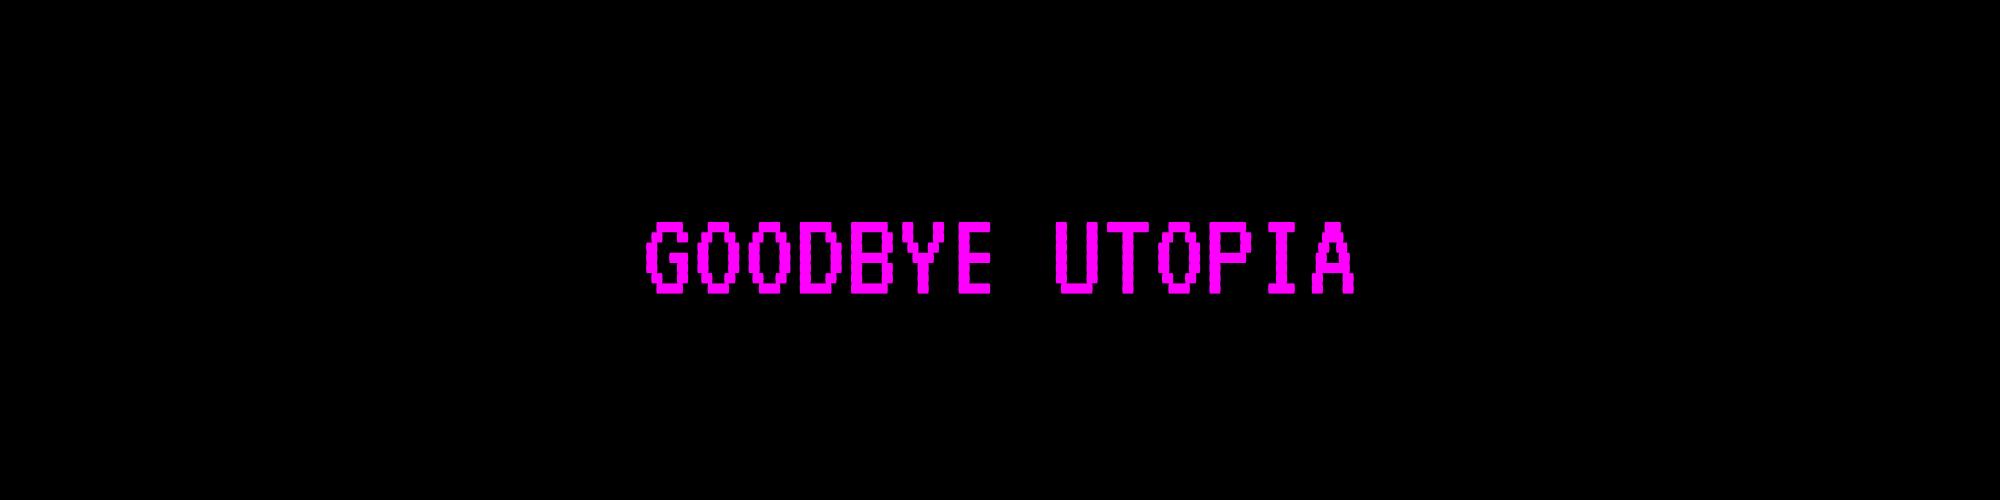 Goodbye Utopia